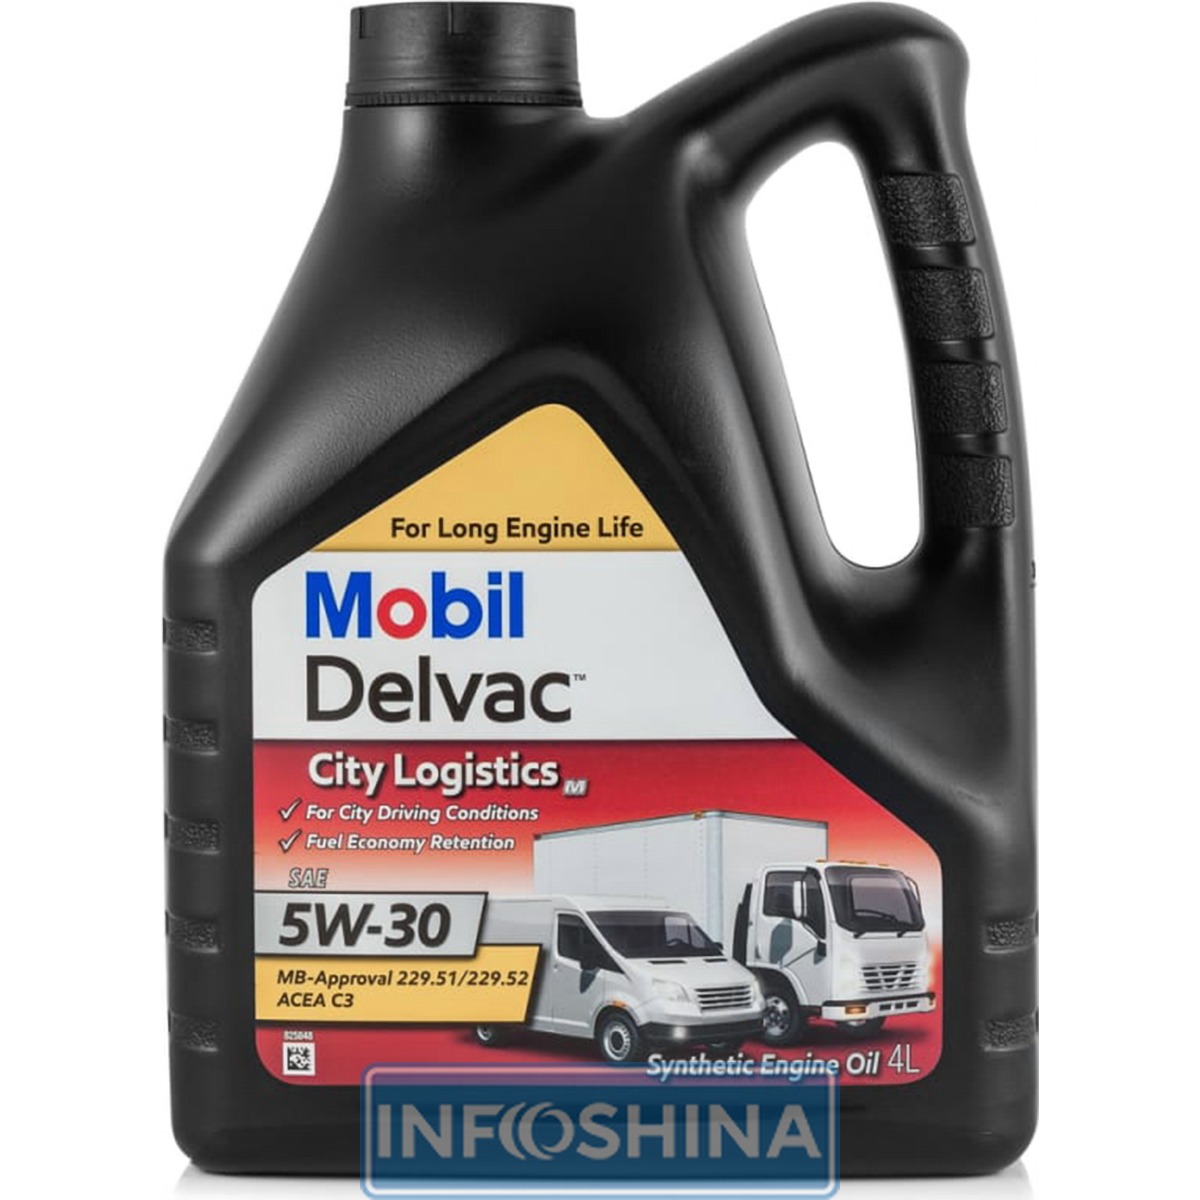 Купить масло Mobil Delvac City Logistics M 5W-30 (4л)